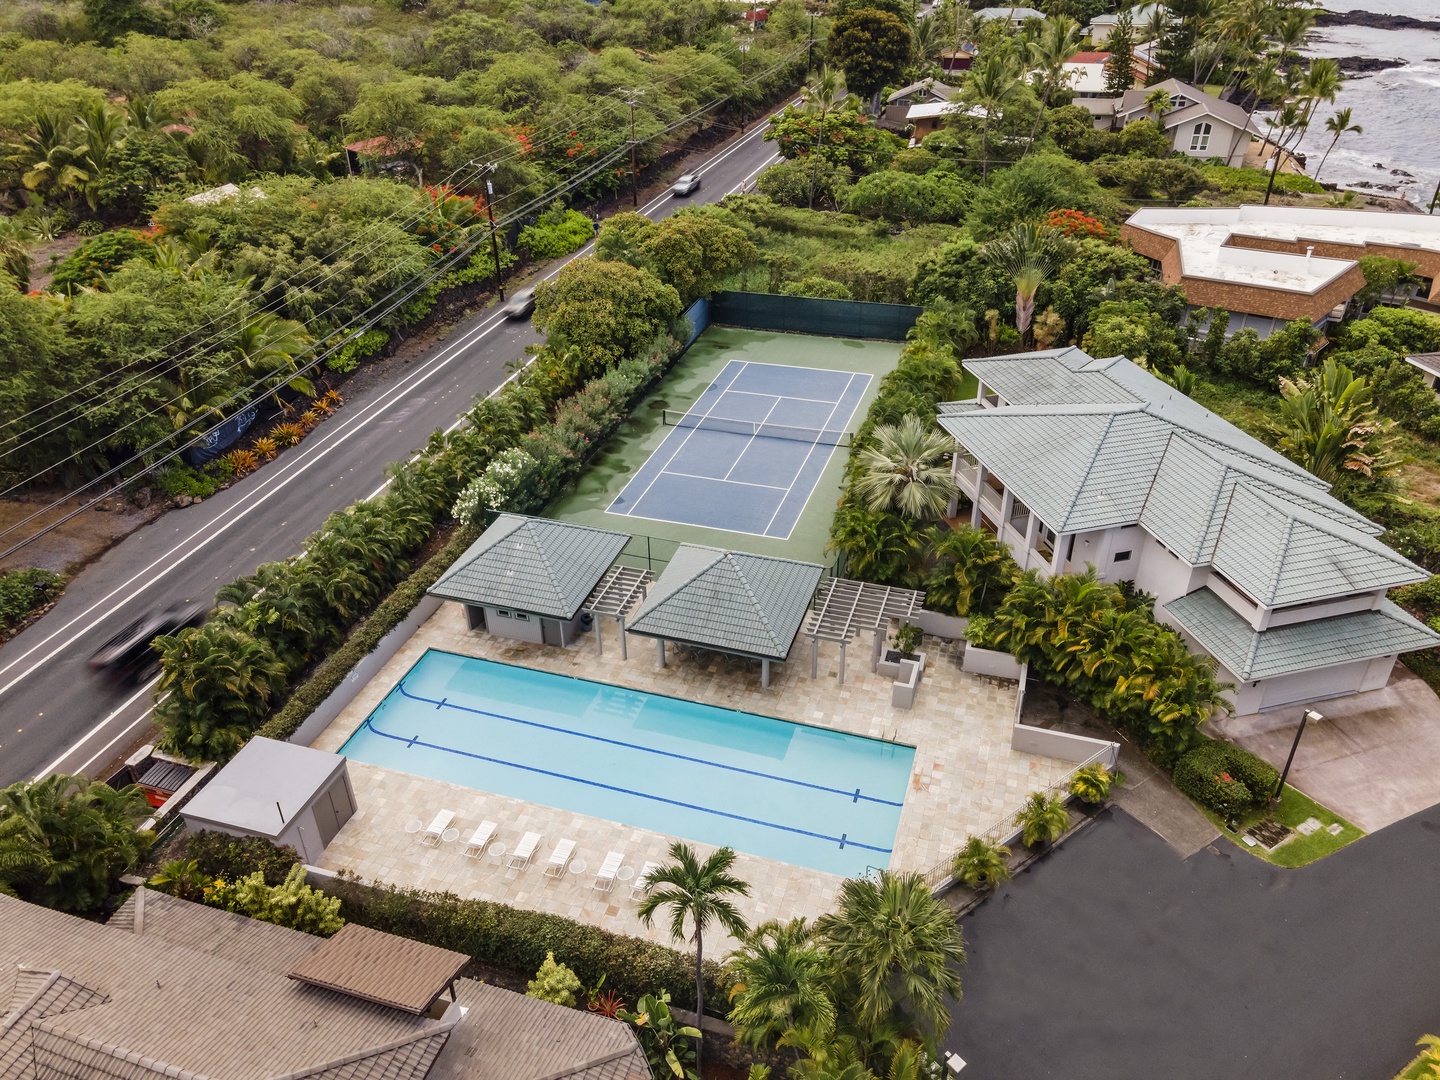 Kailua Kona Vacation Rentals, Ali'i Point #7 - Alii Point Community Pool